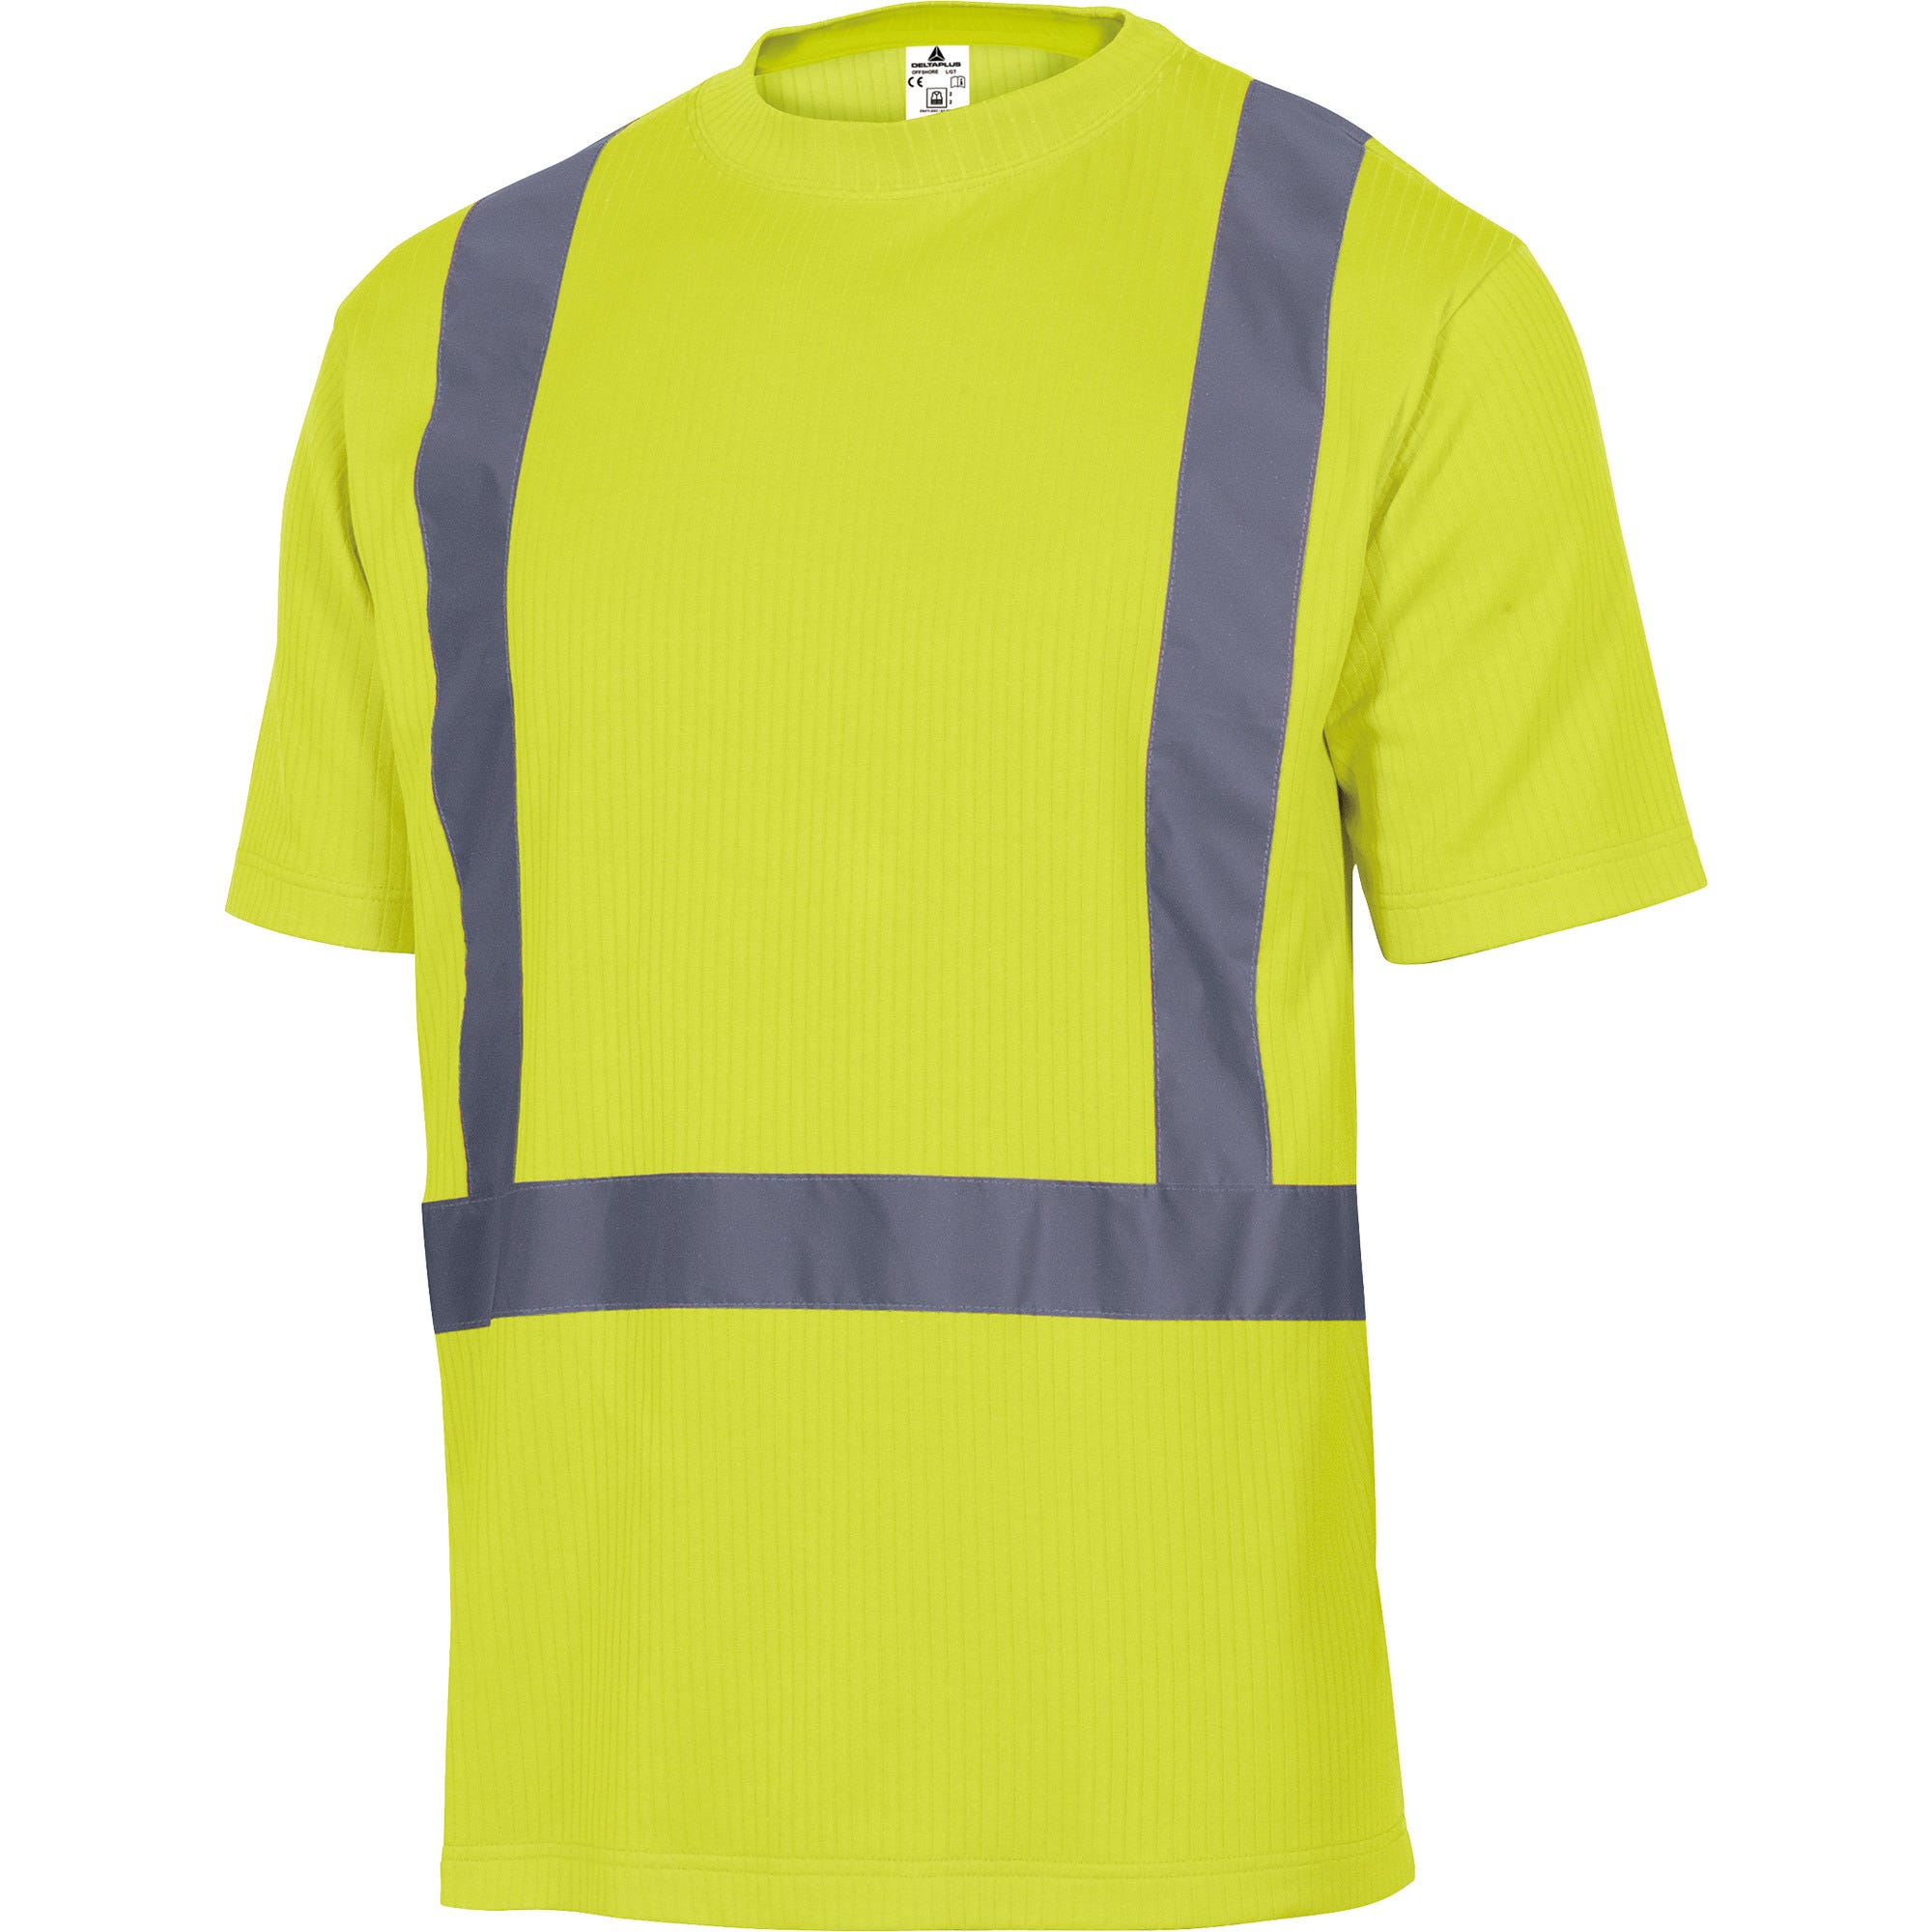 Tee shirt haute visibilité manches courtes jaune Taille L - DELTA PLUS 0